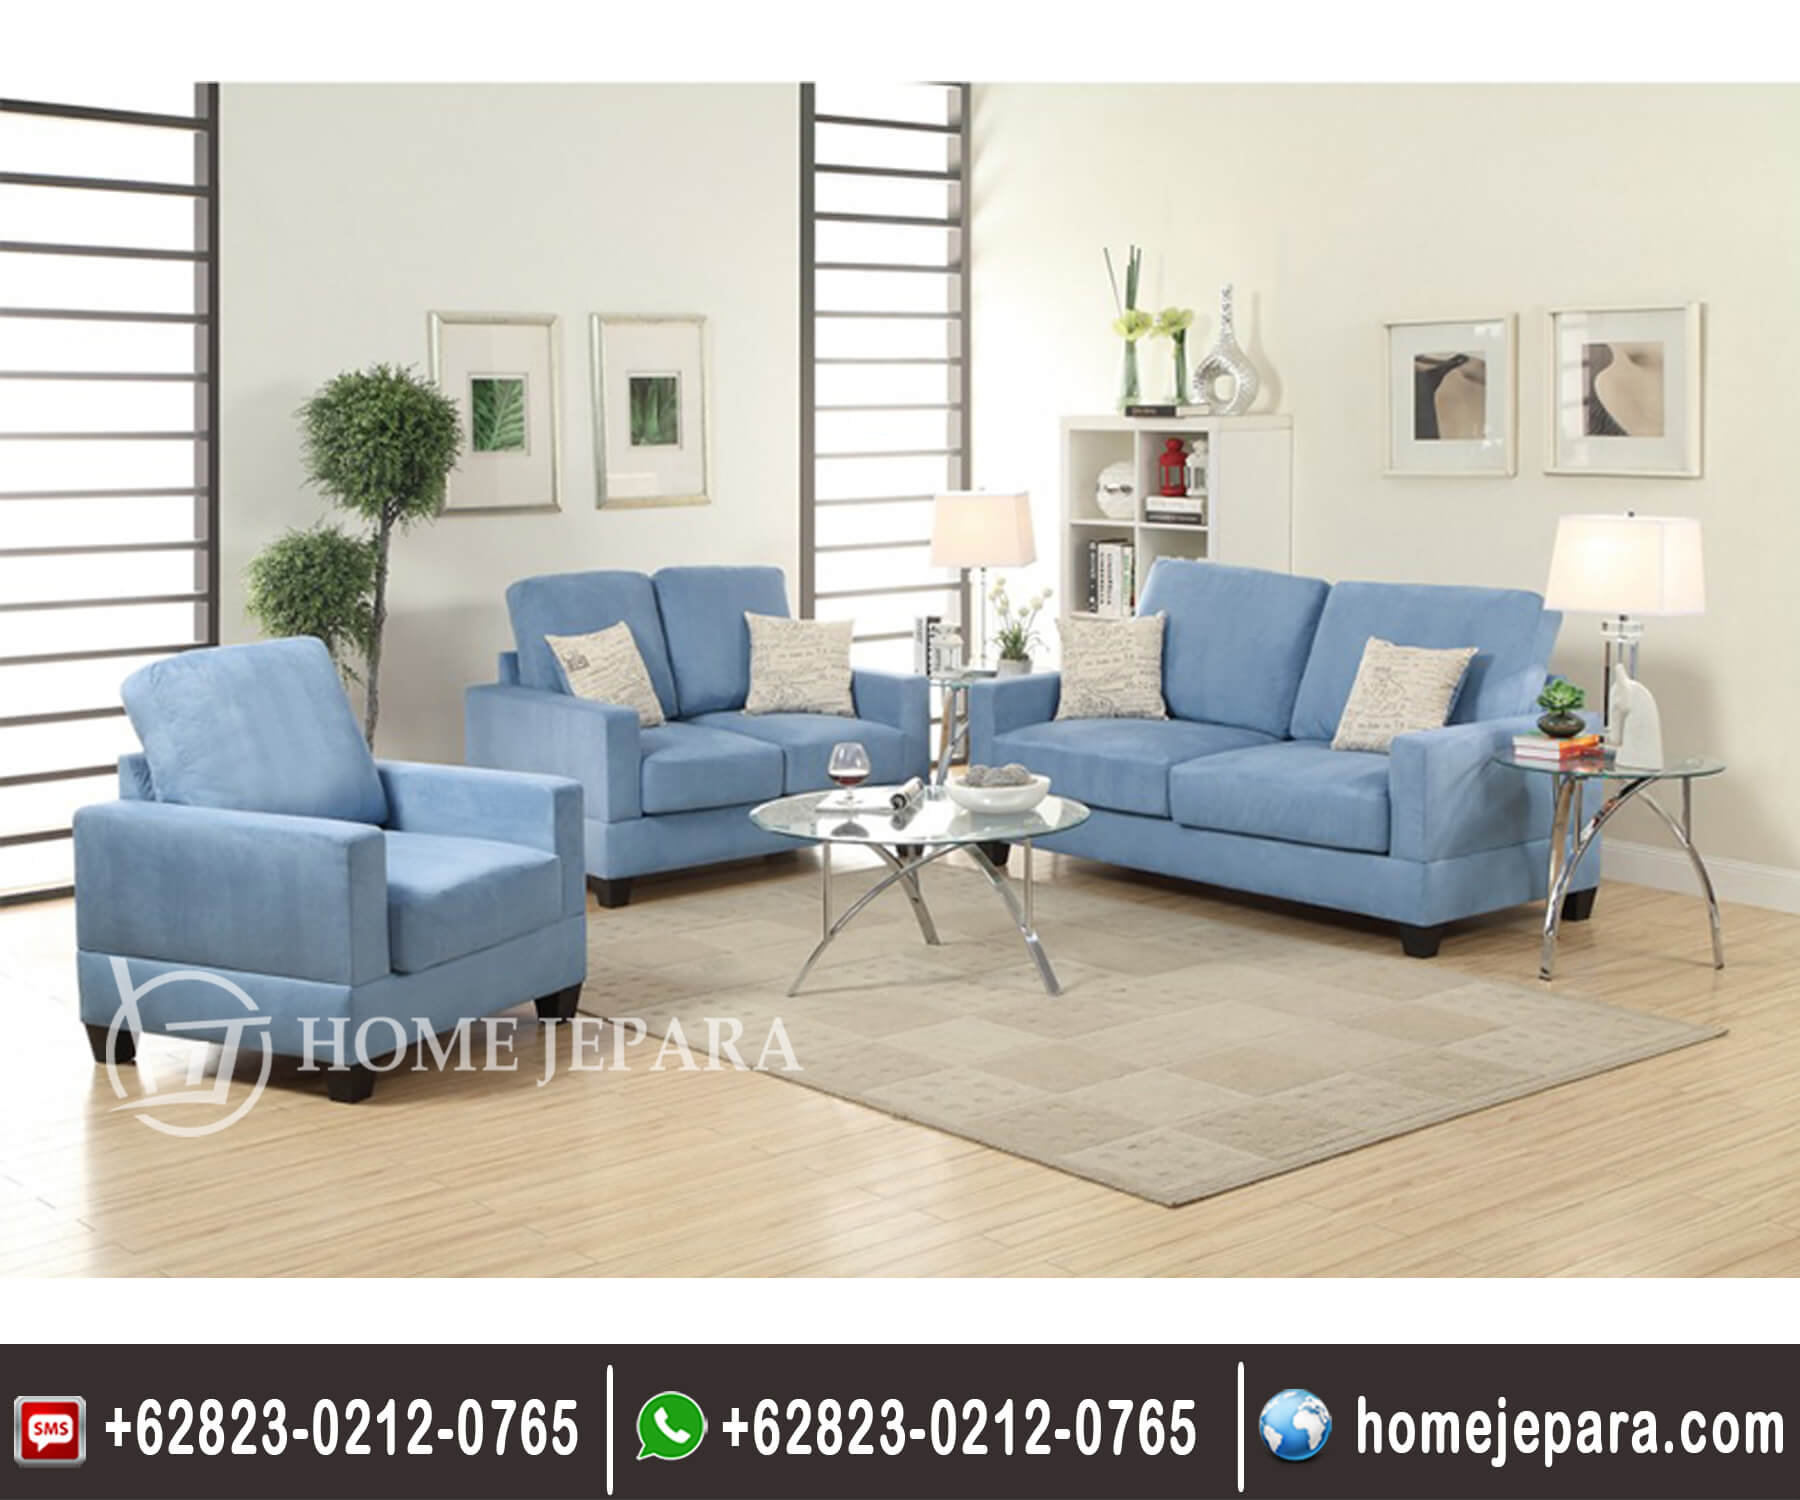 Sofa Tamu Minimalis Model Baru Toko Furniture Home Jepara